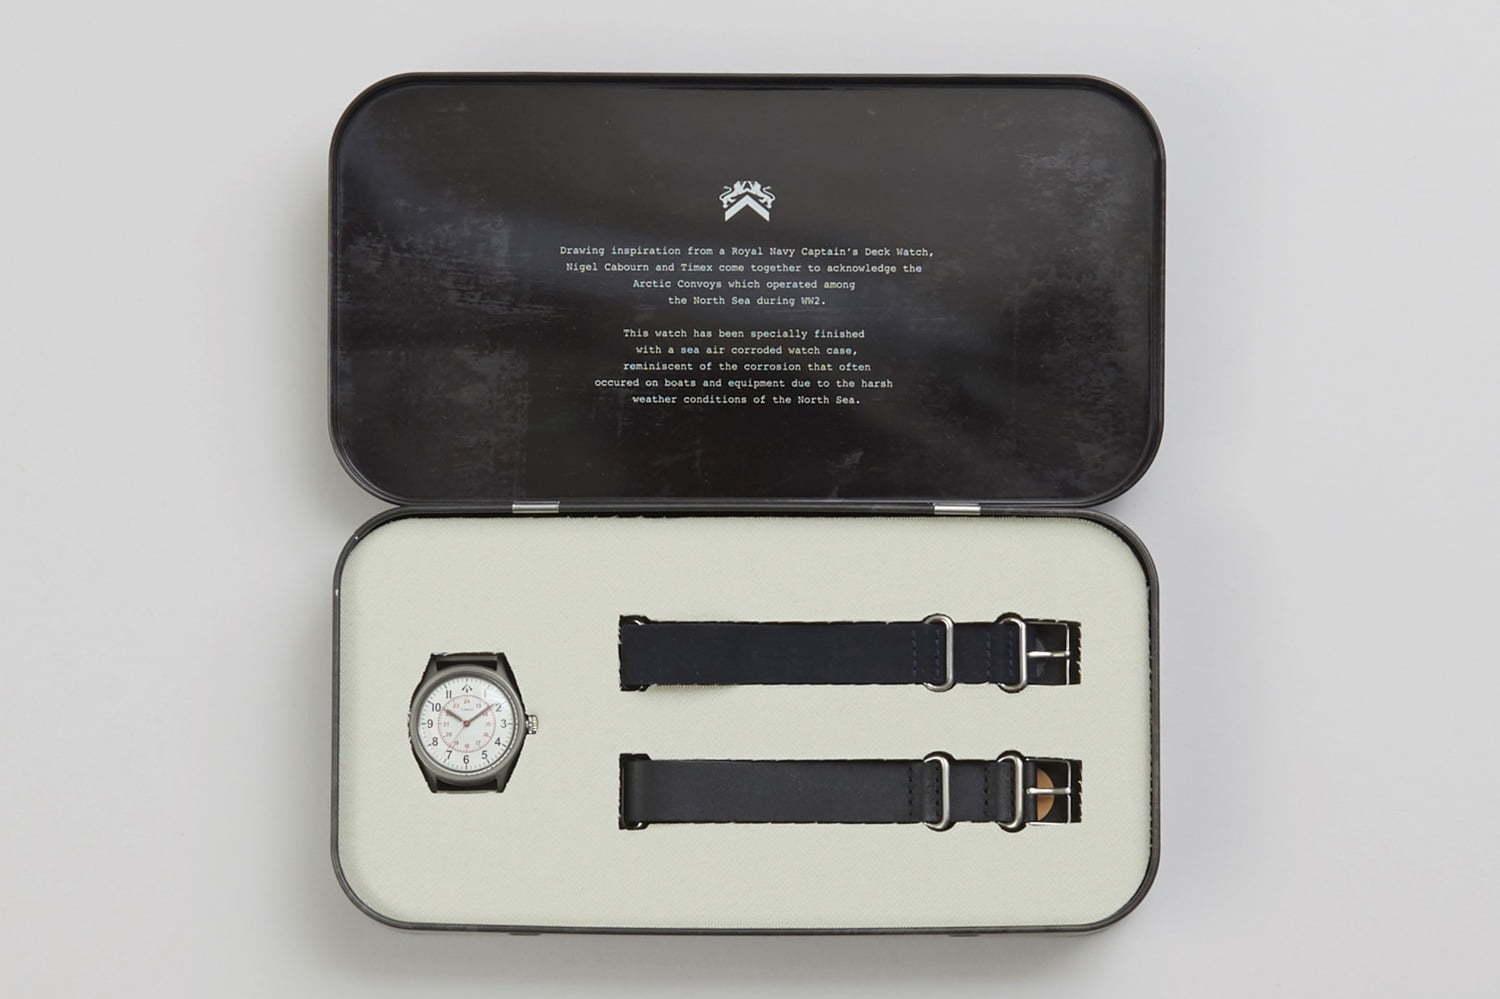 ナイジェル・ケーボン×タイメックスのステンレスケース腕時計、イギリス海軍のデッキウォッチから着想 